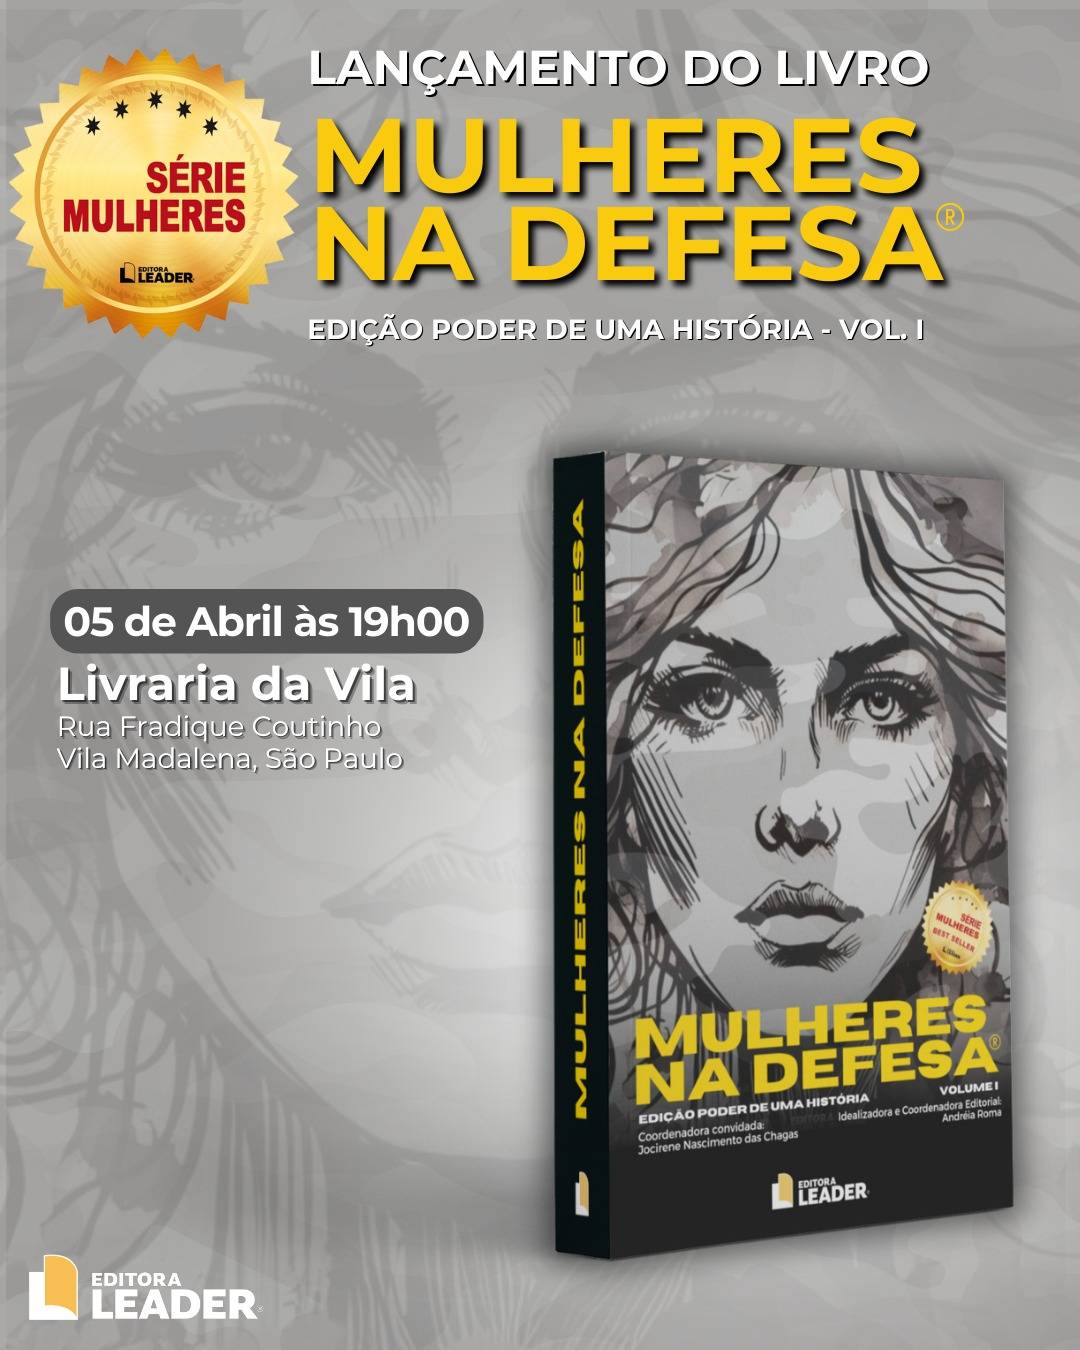 Mulheres de vanguarda: livro celebra contribuições femininas no setor de Defesa no Brasil